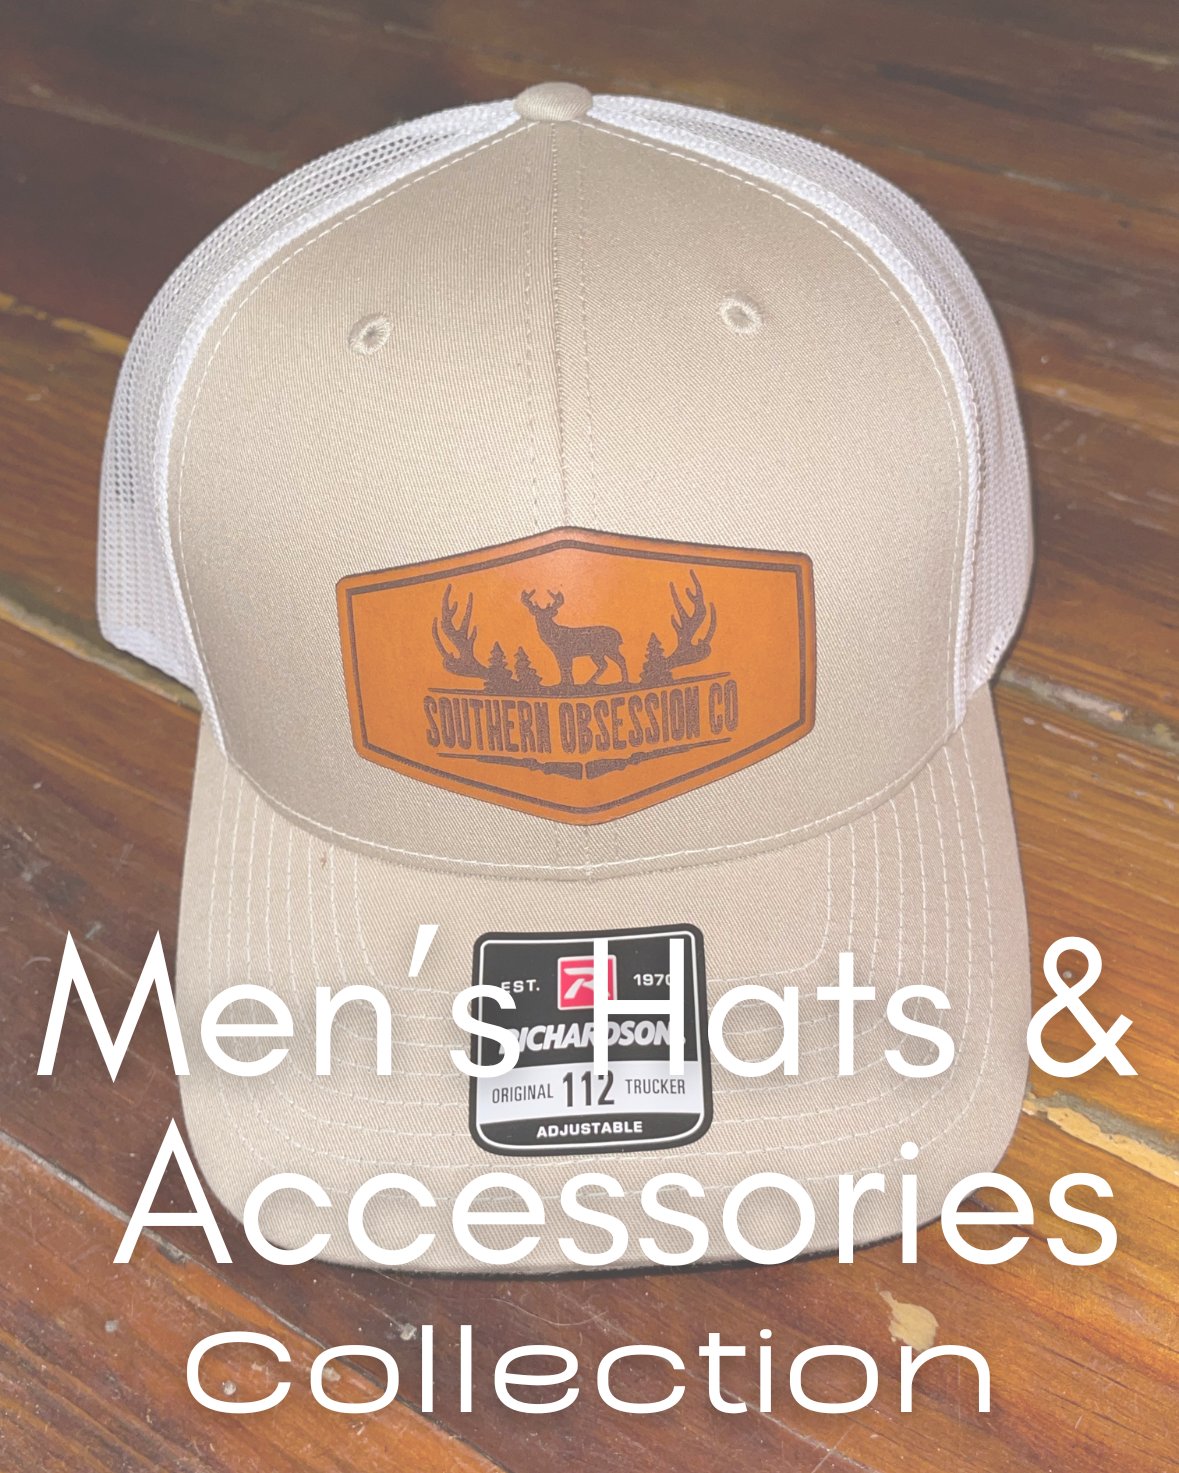 Men Hats & Accessories